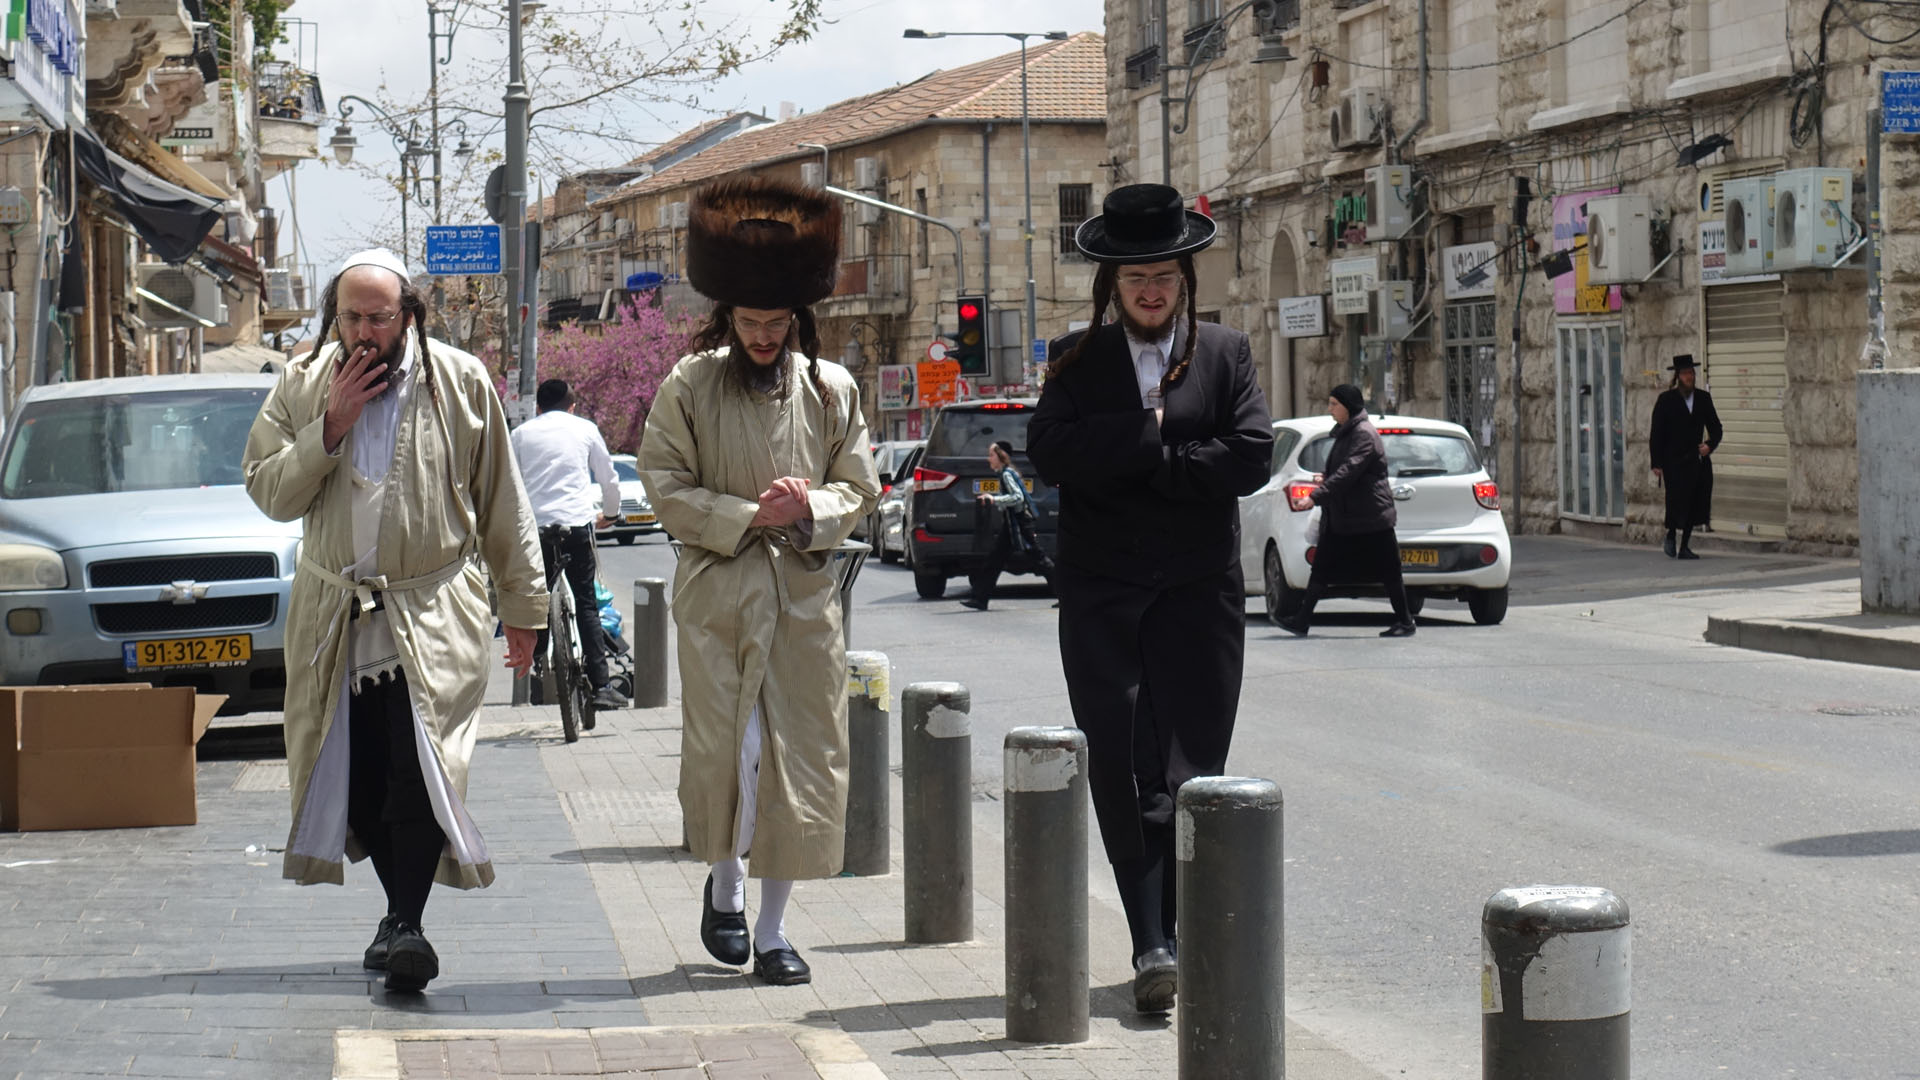 Ultra-Orthodoxie: Zuwendung oder Abkehr Bild: Drei Ultra-Orthodoxe Männer schreiten durch Jerusalemer Straßen Wer der jüdischen Religion den Rücken kehrt, wird gemeinhin als „Choser beSche‘ela“ bezeichnet, wörtlich jemand, der zur Frage zurückkehrt. Wer sich dagegen der Religion zuwendet, ist ein „Choser biTschuwa“, jemand, der zur Antwort zurückkehrt. „Tschuwa“ heißt aber auch „Reue“. Eine wachsende Gruppe sind Ultra-Orthodoxe, die ihrer Gemeinschaft den Rücken kehren. Vielfach bedeutet diese Abwendung auch den Bruch mit der Familie und dem kompletten sozialen Netzwerk. Viele von ihnen nennen sich selbst Joz‘im, Aussteiger. Sie fallen oft aus allen Rastern und brauchen Hilfe von außen, um sich in der modernen Gesellschaft Israels zurechtzufinden. Viele thematisieren in Kunst, Literatur und Filmen ihre Vergangenheit. Sie bekommen großes Verständnis und Sympathie der israelischen Mehrheitsgesellschaft, bleiben jedoch vielfach als Gemeinschaft unter sich.